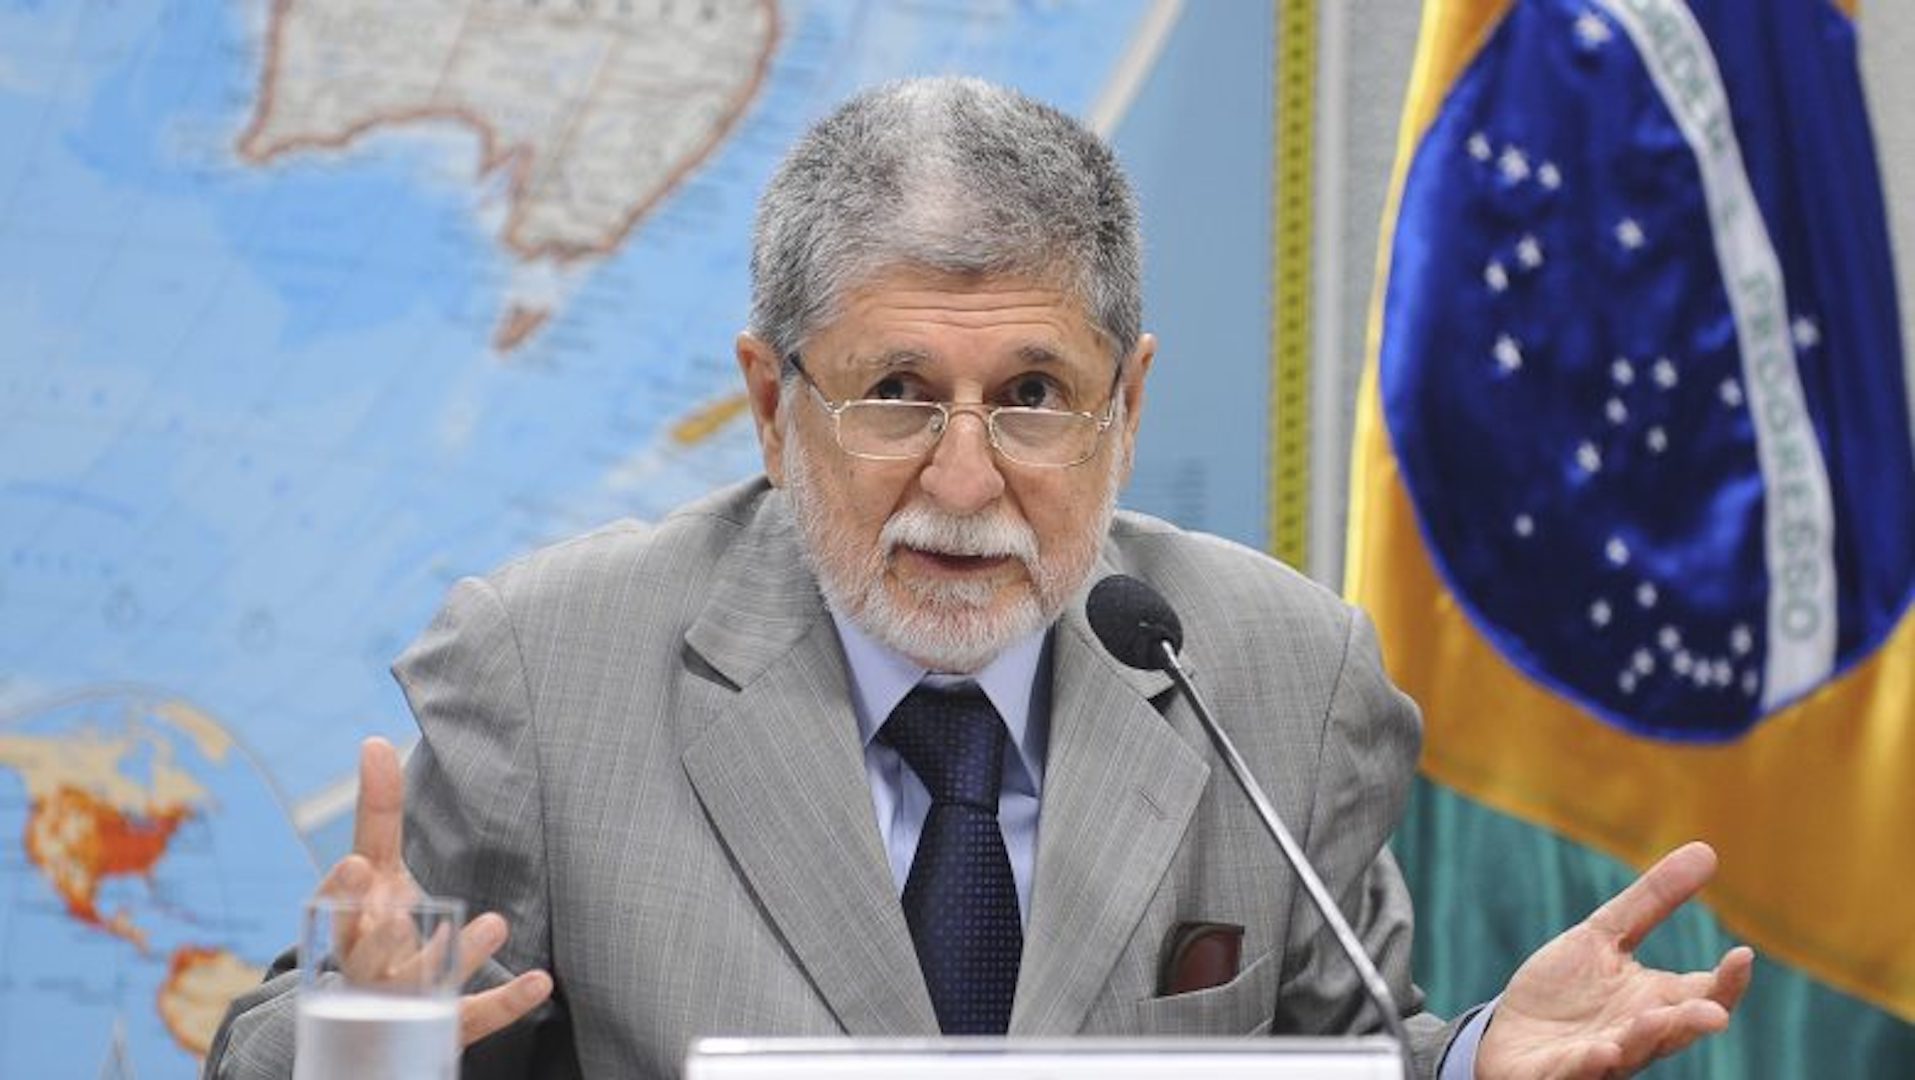 Celso Amorim defende chapa Lula Alckmin. Ele está em uma mesa, conversando com alguém. Usa óculos e tem cabelo grisalho, veste terno cinza.